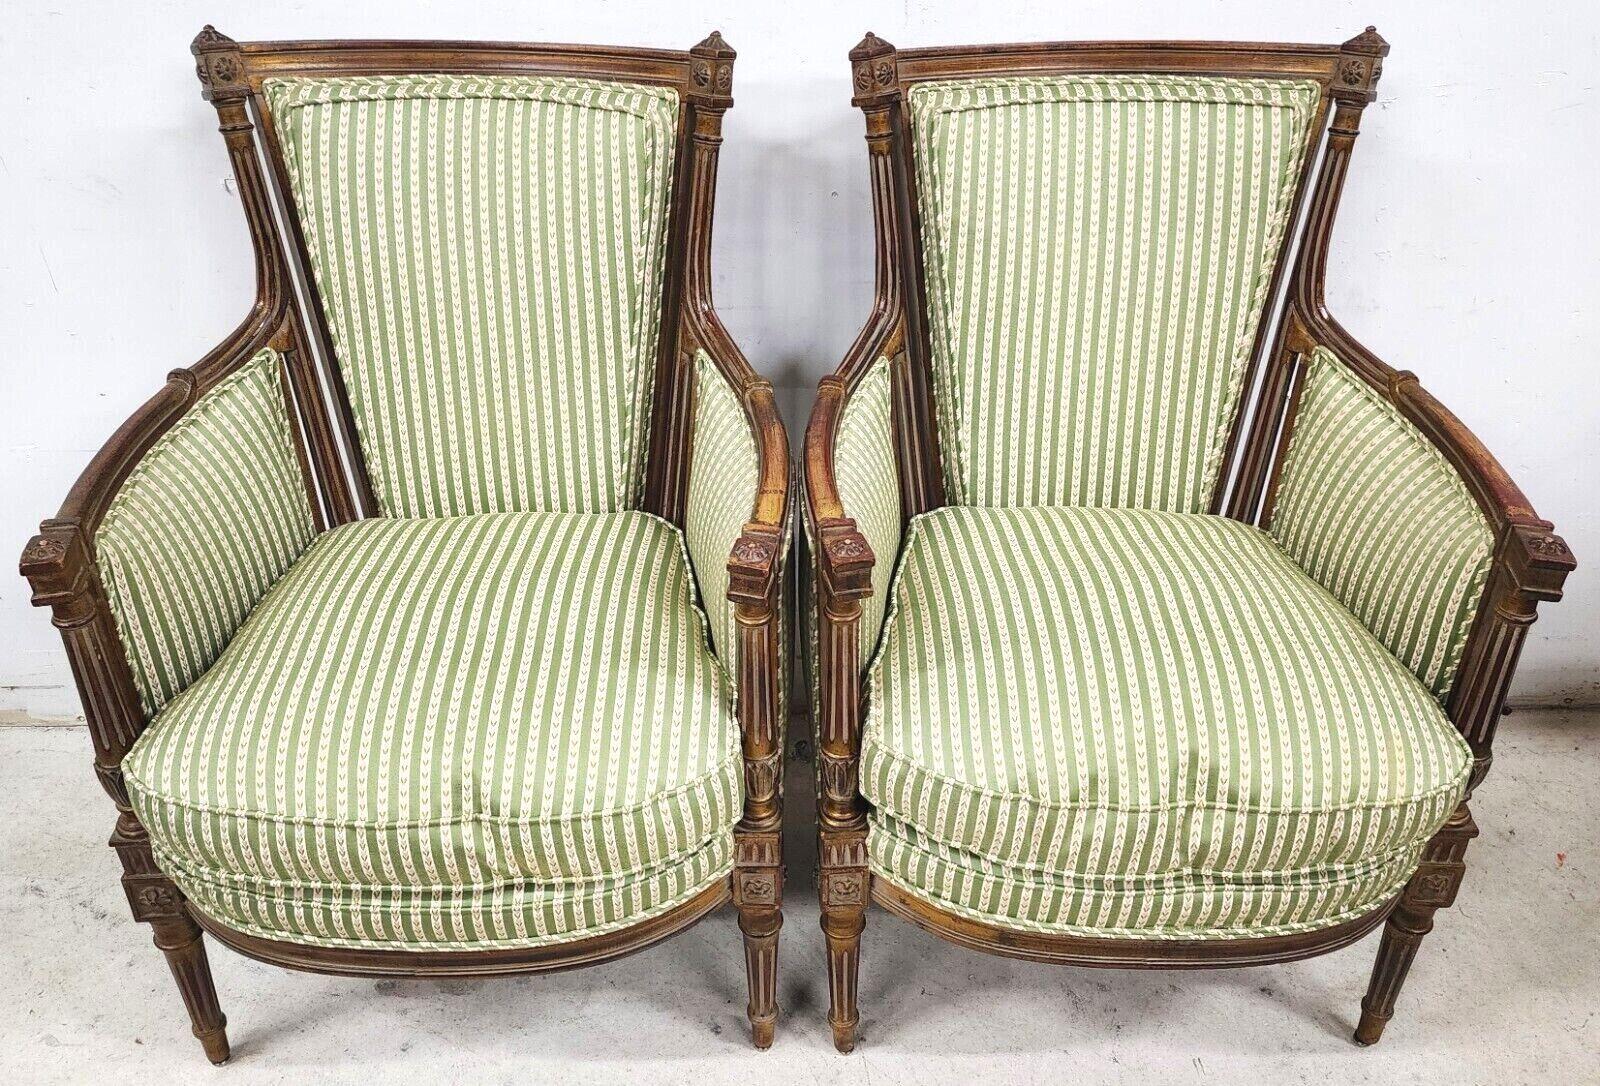 Wir bieten eine unserer jüngsten Palm Beach Estate Fine Furniture Akquisitionen von A 
Satz von 2 französischen Bergère-Stühlen aus Giltwood im Louis XVI-Stil.
Die Sitze sind mit Daunen und Schaumstoff gefüllt, so dass sie sehr bequem sind und